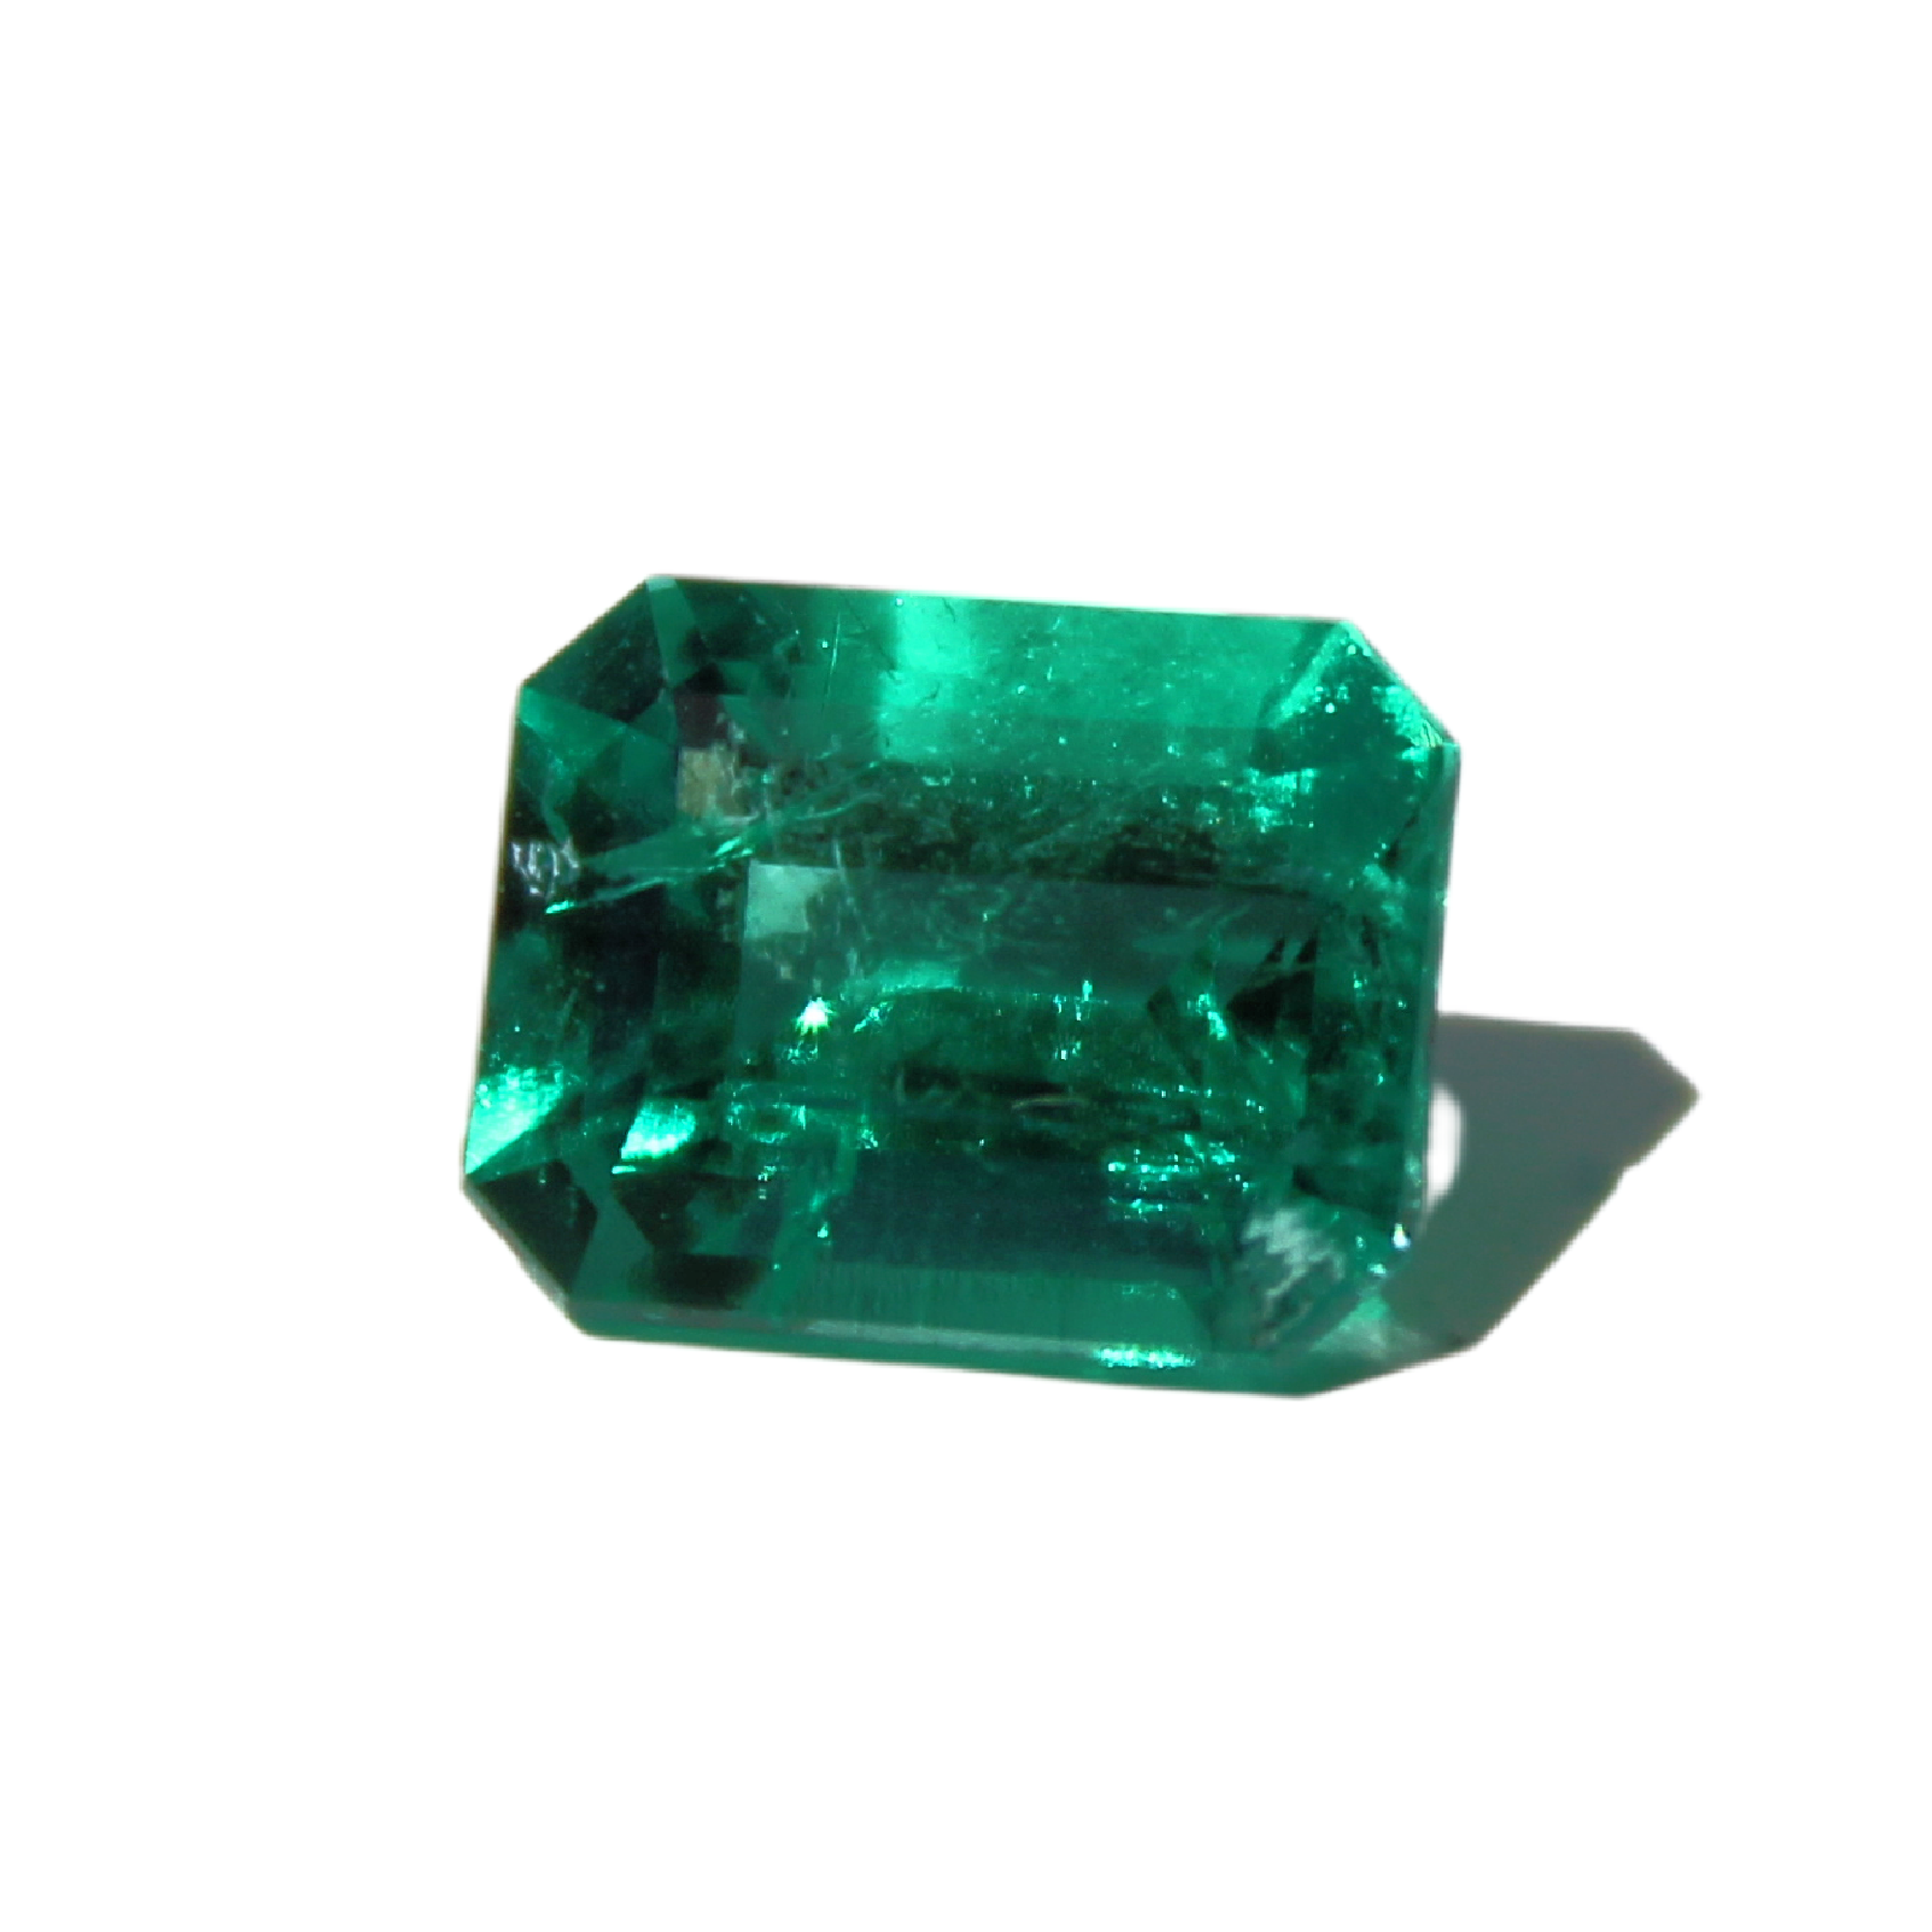 Emerald Cut Emerald, No Oil 1.64 Carat